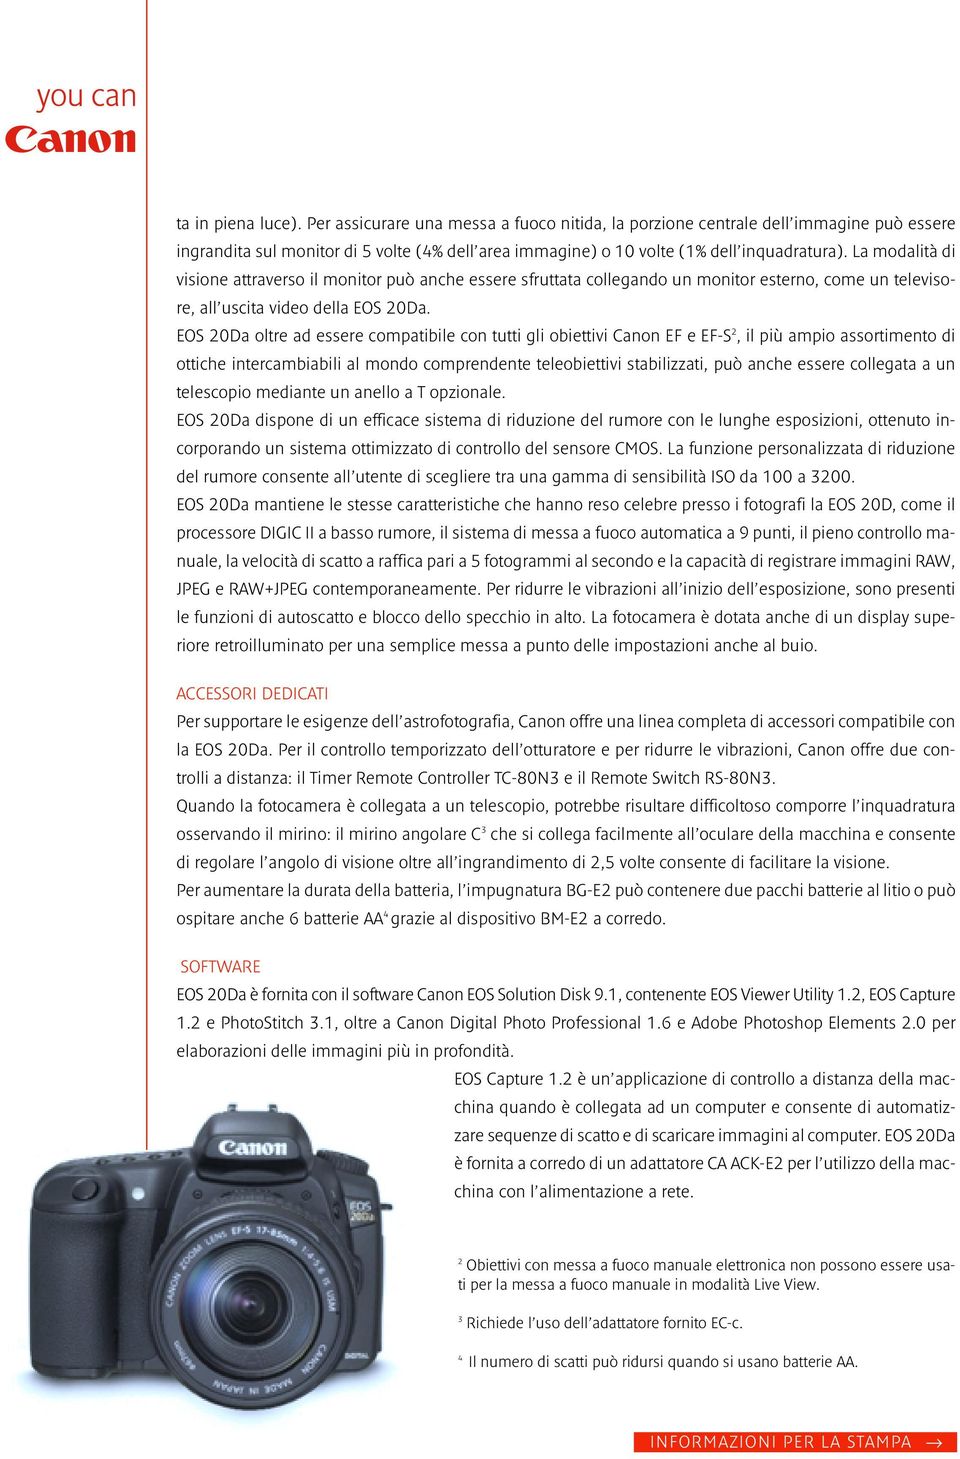 EOS 20Da oltre ad essere compatibile con tutti gli obiettivi Canon EF e EF-S 2, il più ampio assortimento di ottiche intercambiabili al mondo comprendente teleobiettivi stabilizzati, può anche essere